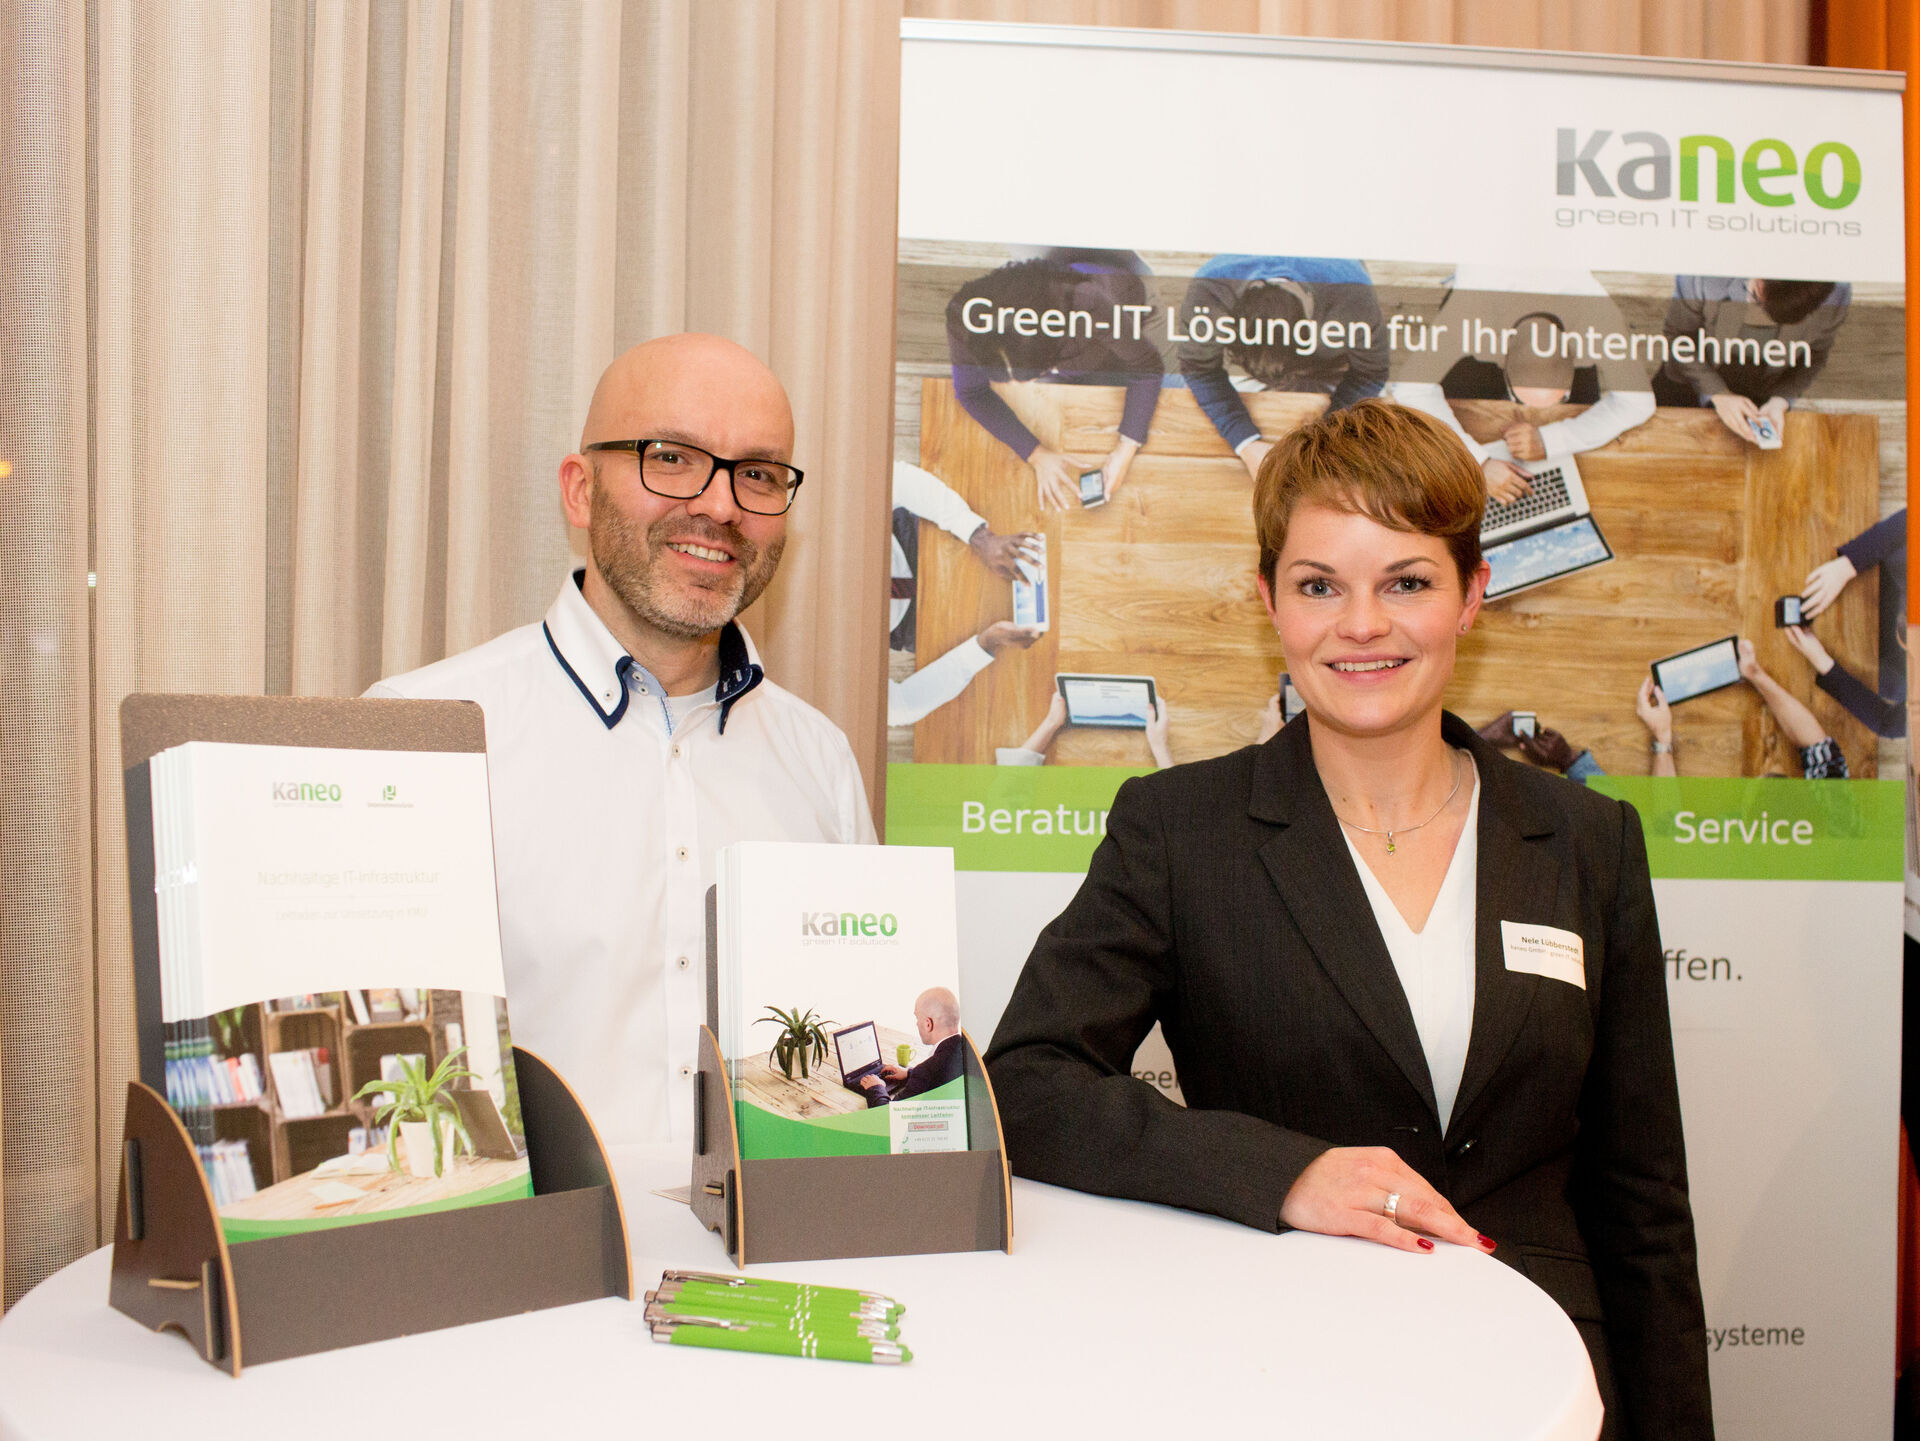 Nele Kammlott von kaneo IT green solutions und Kollege